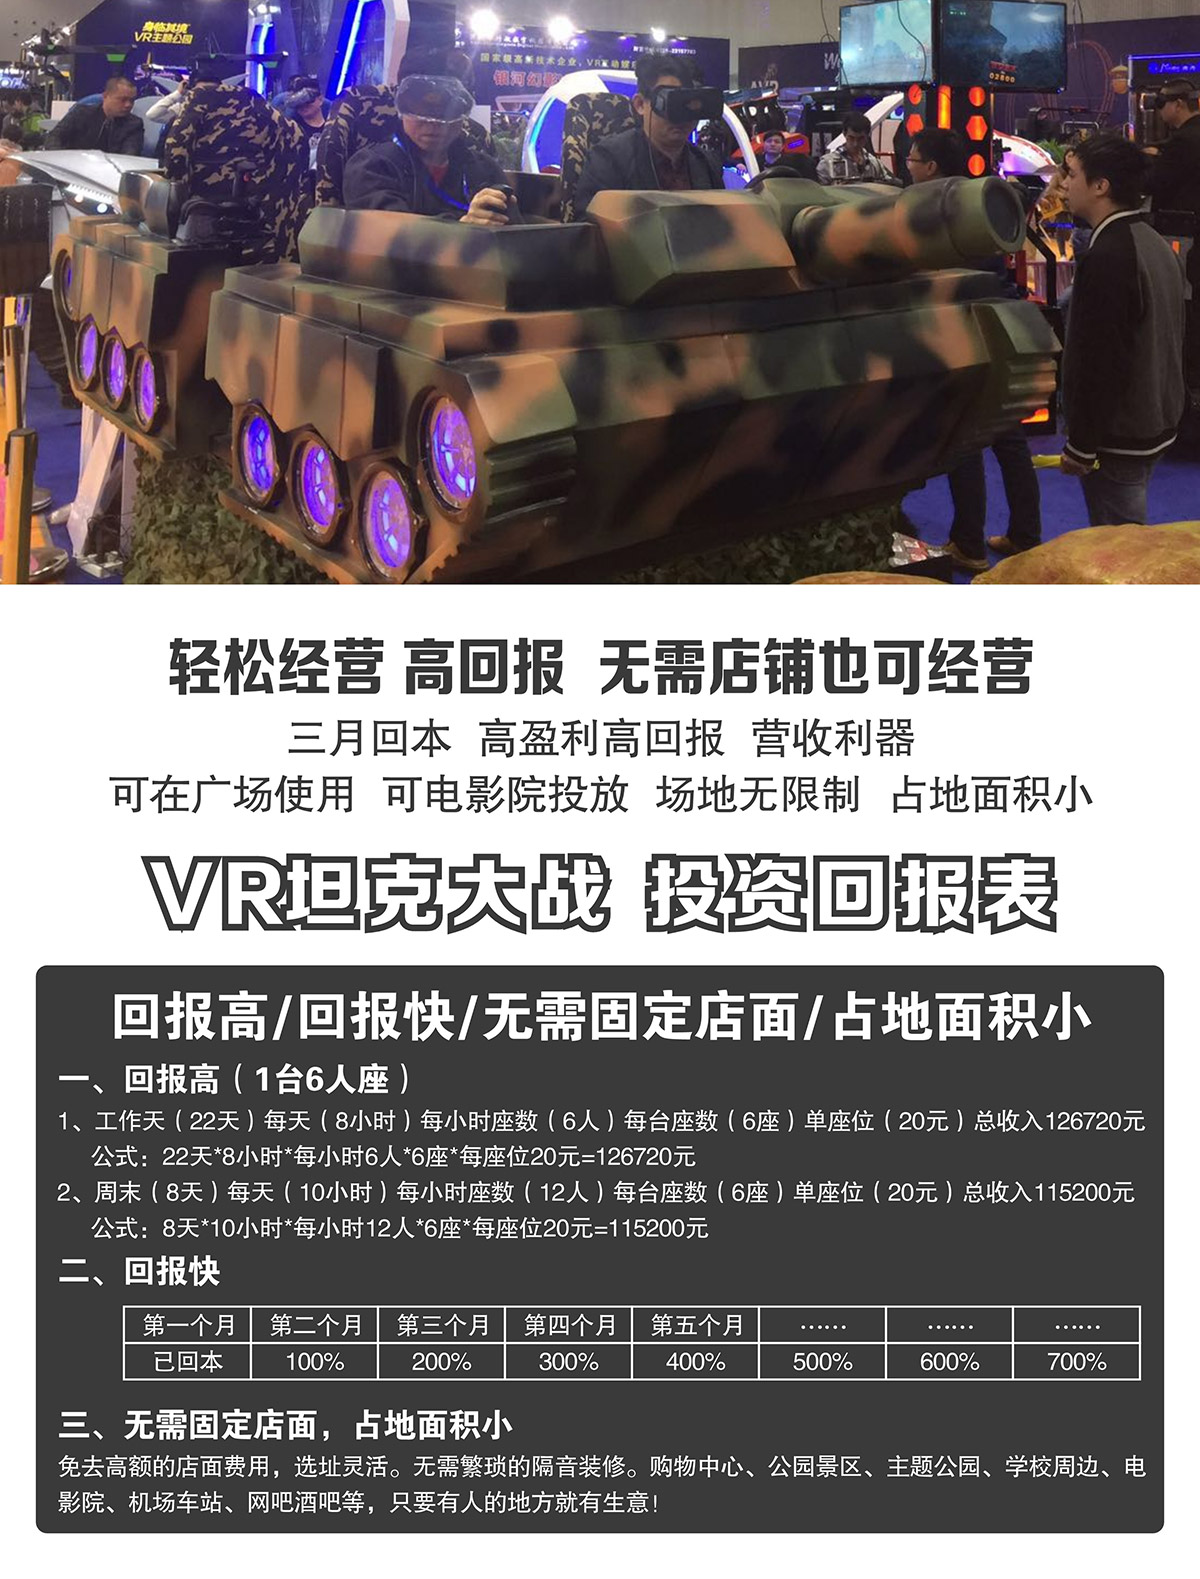 模拟体验VR坦克大战投资回报表.jpg